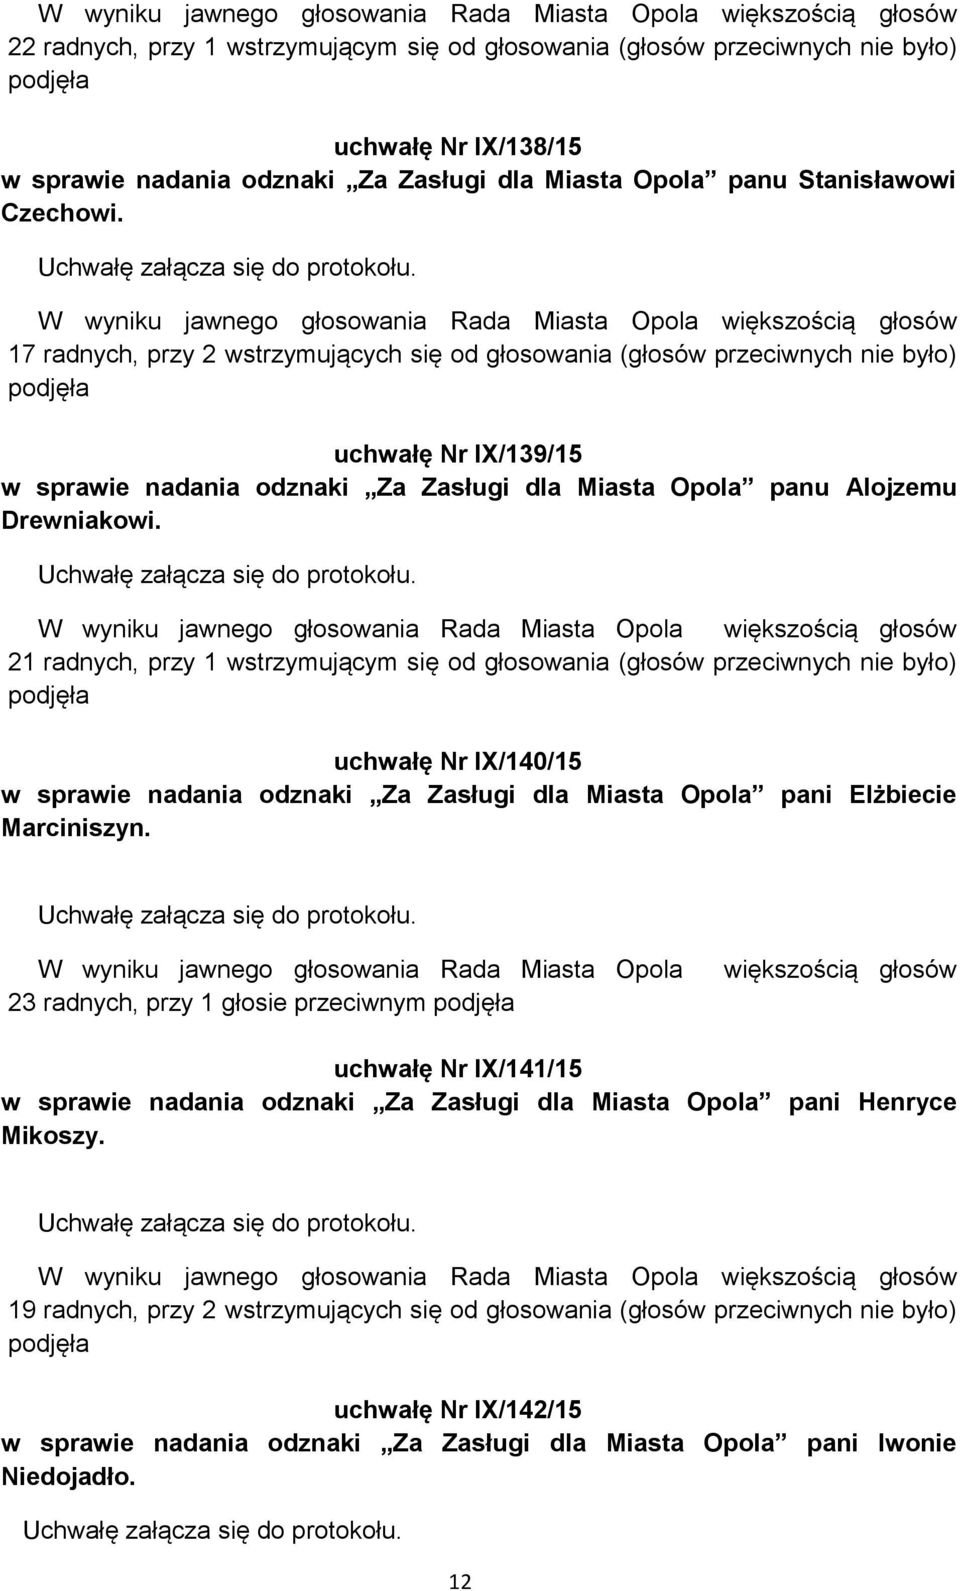 21 radnych, przy 1 wstrzymującym się od głosowania (głosów przeciwnych nie było) uchwałę Nr IX/140/15 w sprawie nadania odznaki Za Zasługi dla Miasta Opola pani Elżbiecie Marciniszyn.